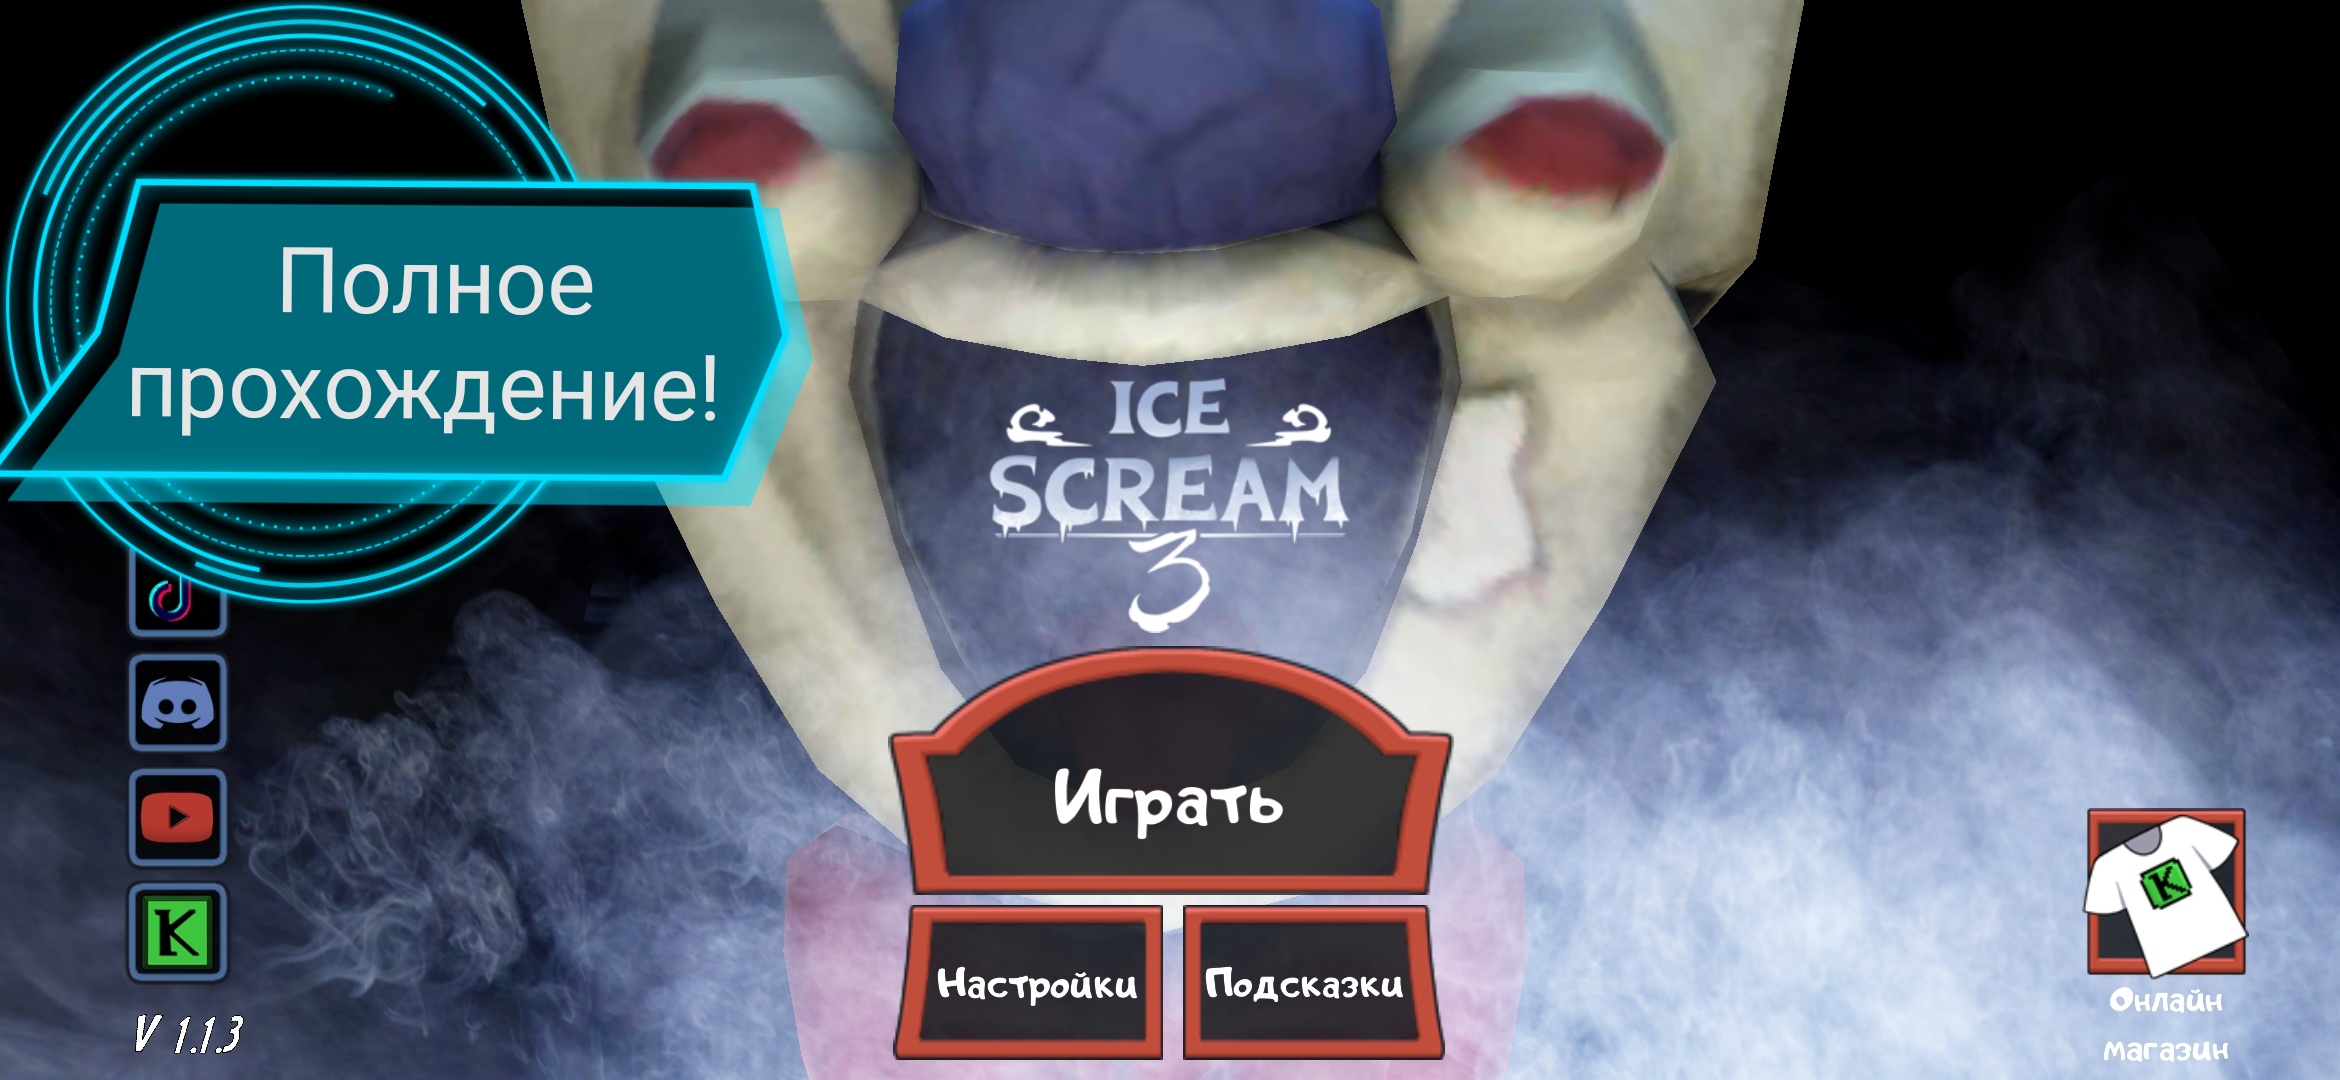 Айс прохождение. Прохождение айс. Как играть за продавца мороженого Ice Scream. Skin Ice Scream 3.